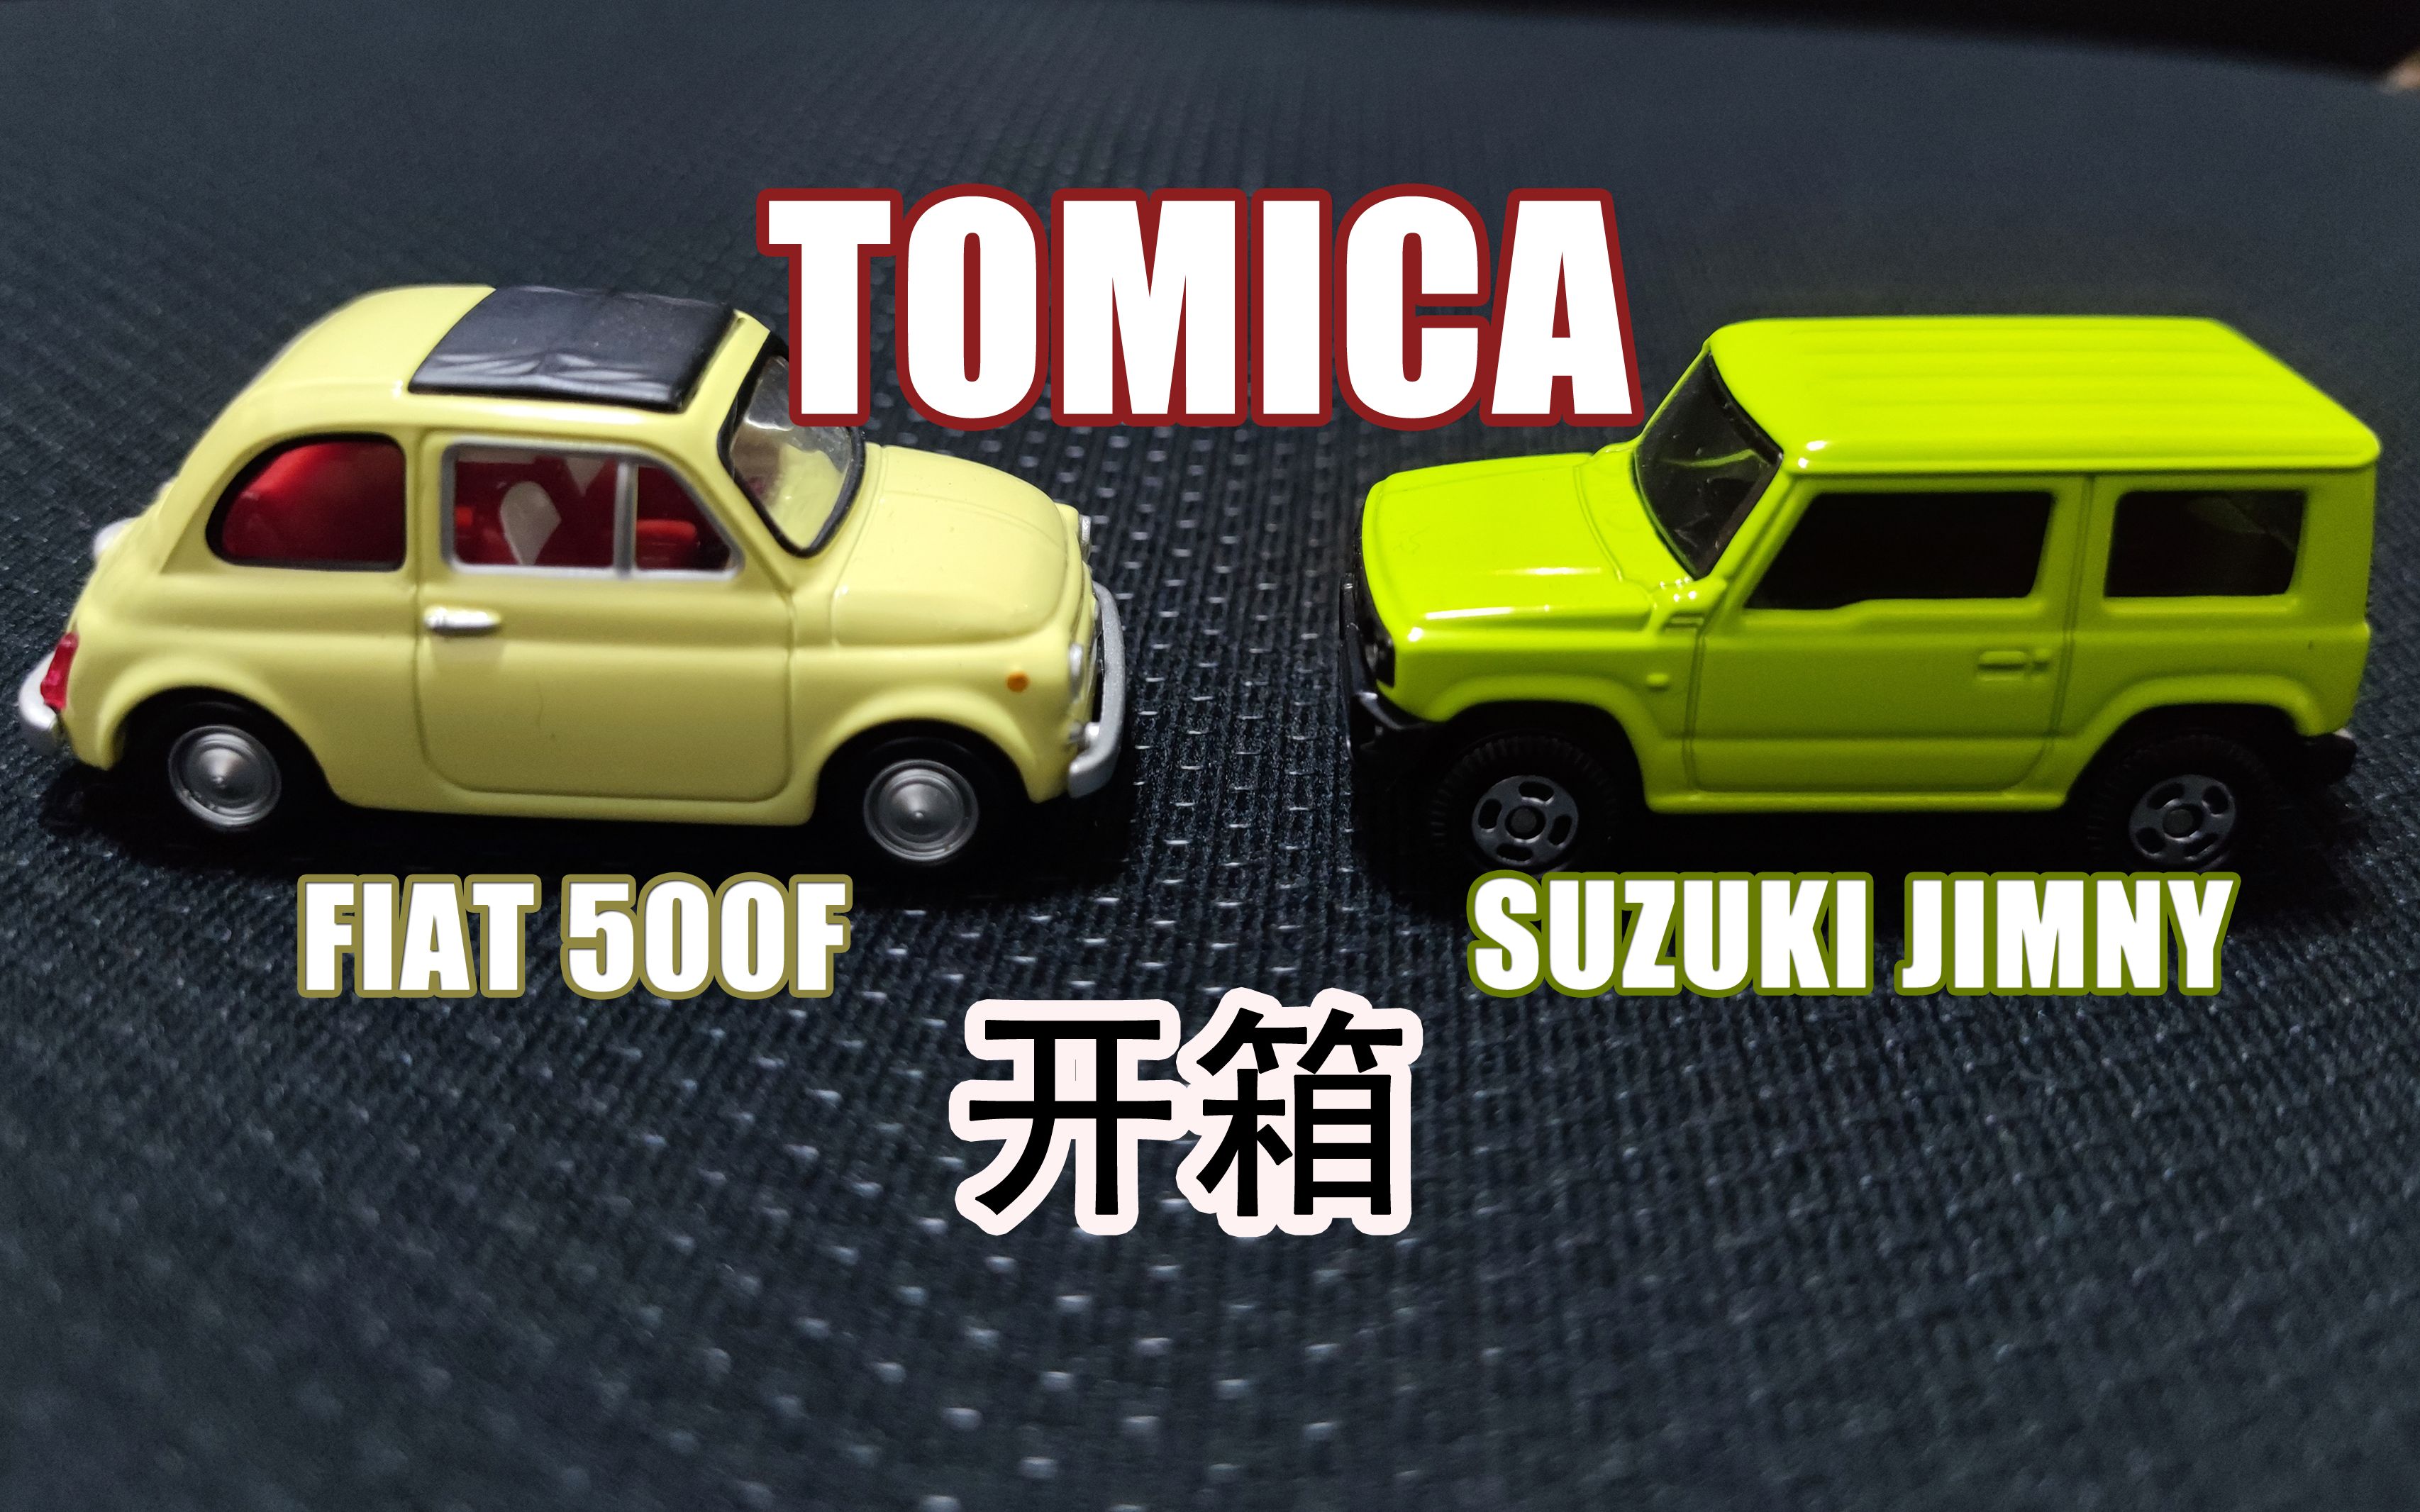 开箱 TOMICA 车模型 菲亚特 500F (FIAT 500F) & 铃木 吉姆尼 (SUZUKI JIMNY)